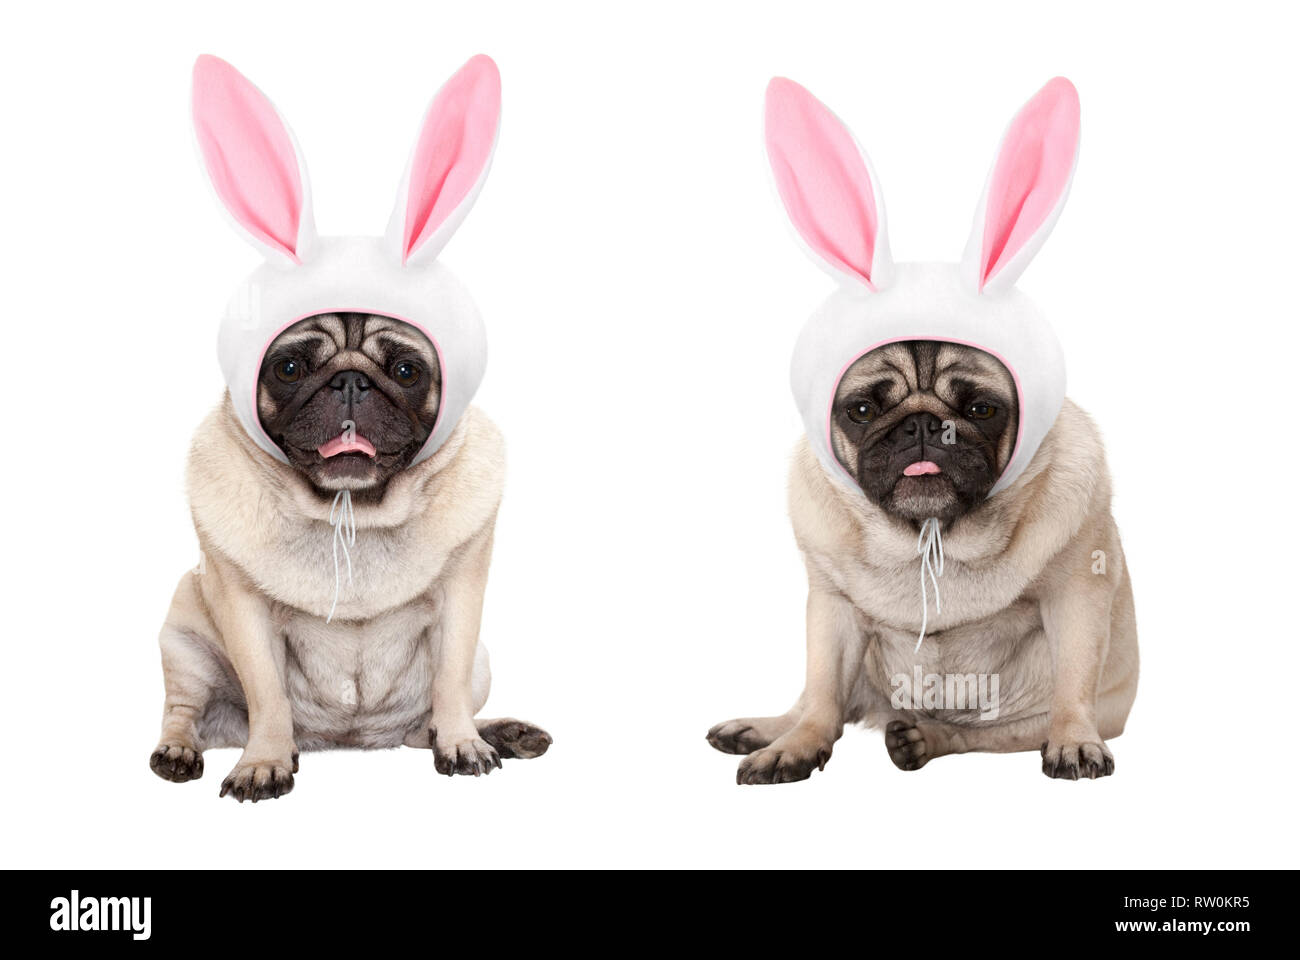 Lustige kleine Ostern Mops Welpen Hunde, hinsetzen, das Tragen von Osterhase Mütze mit Ohren, auf weißem Hintergrund Stockfoto